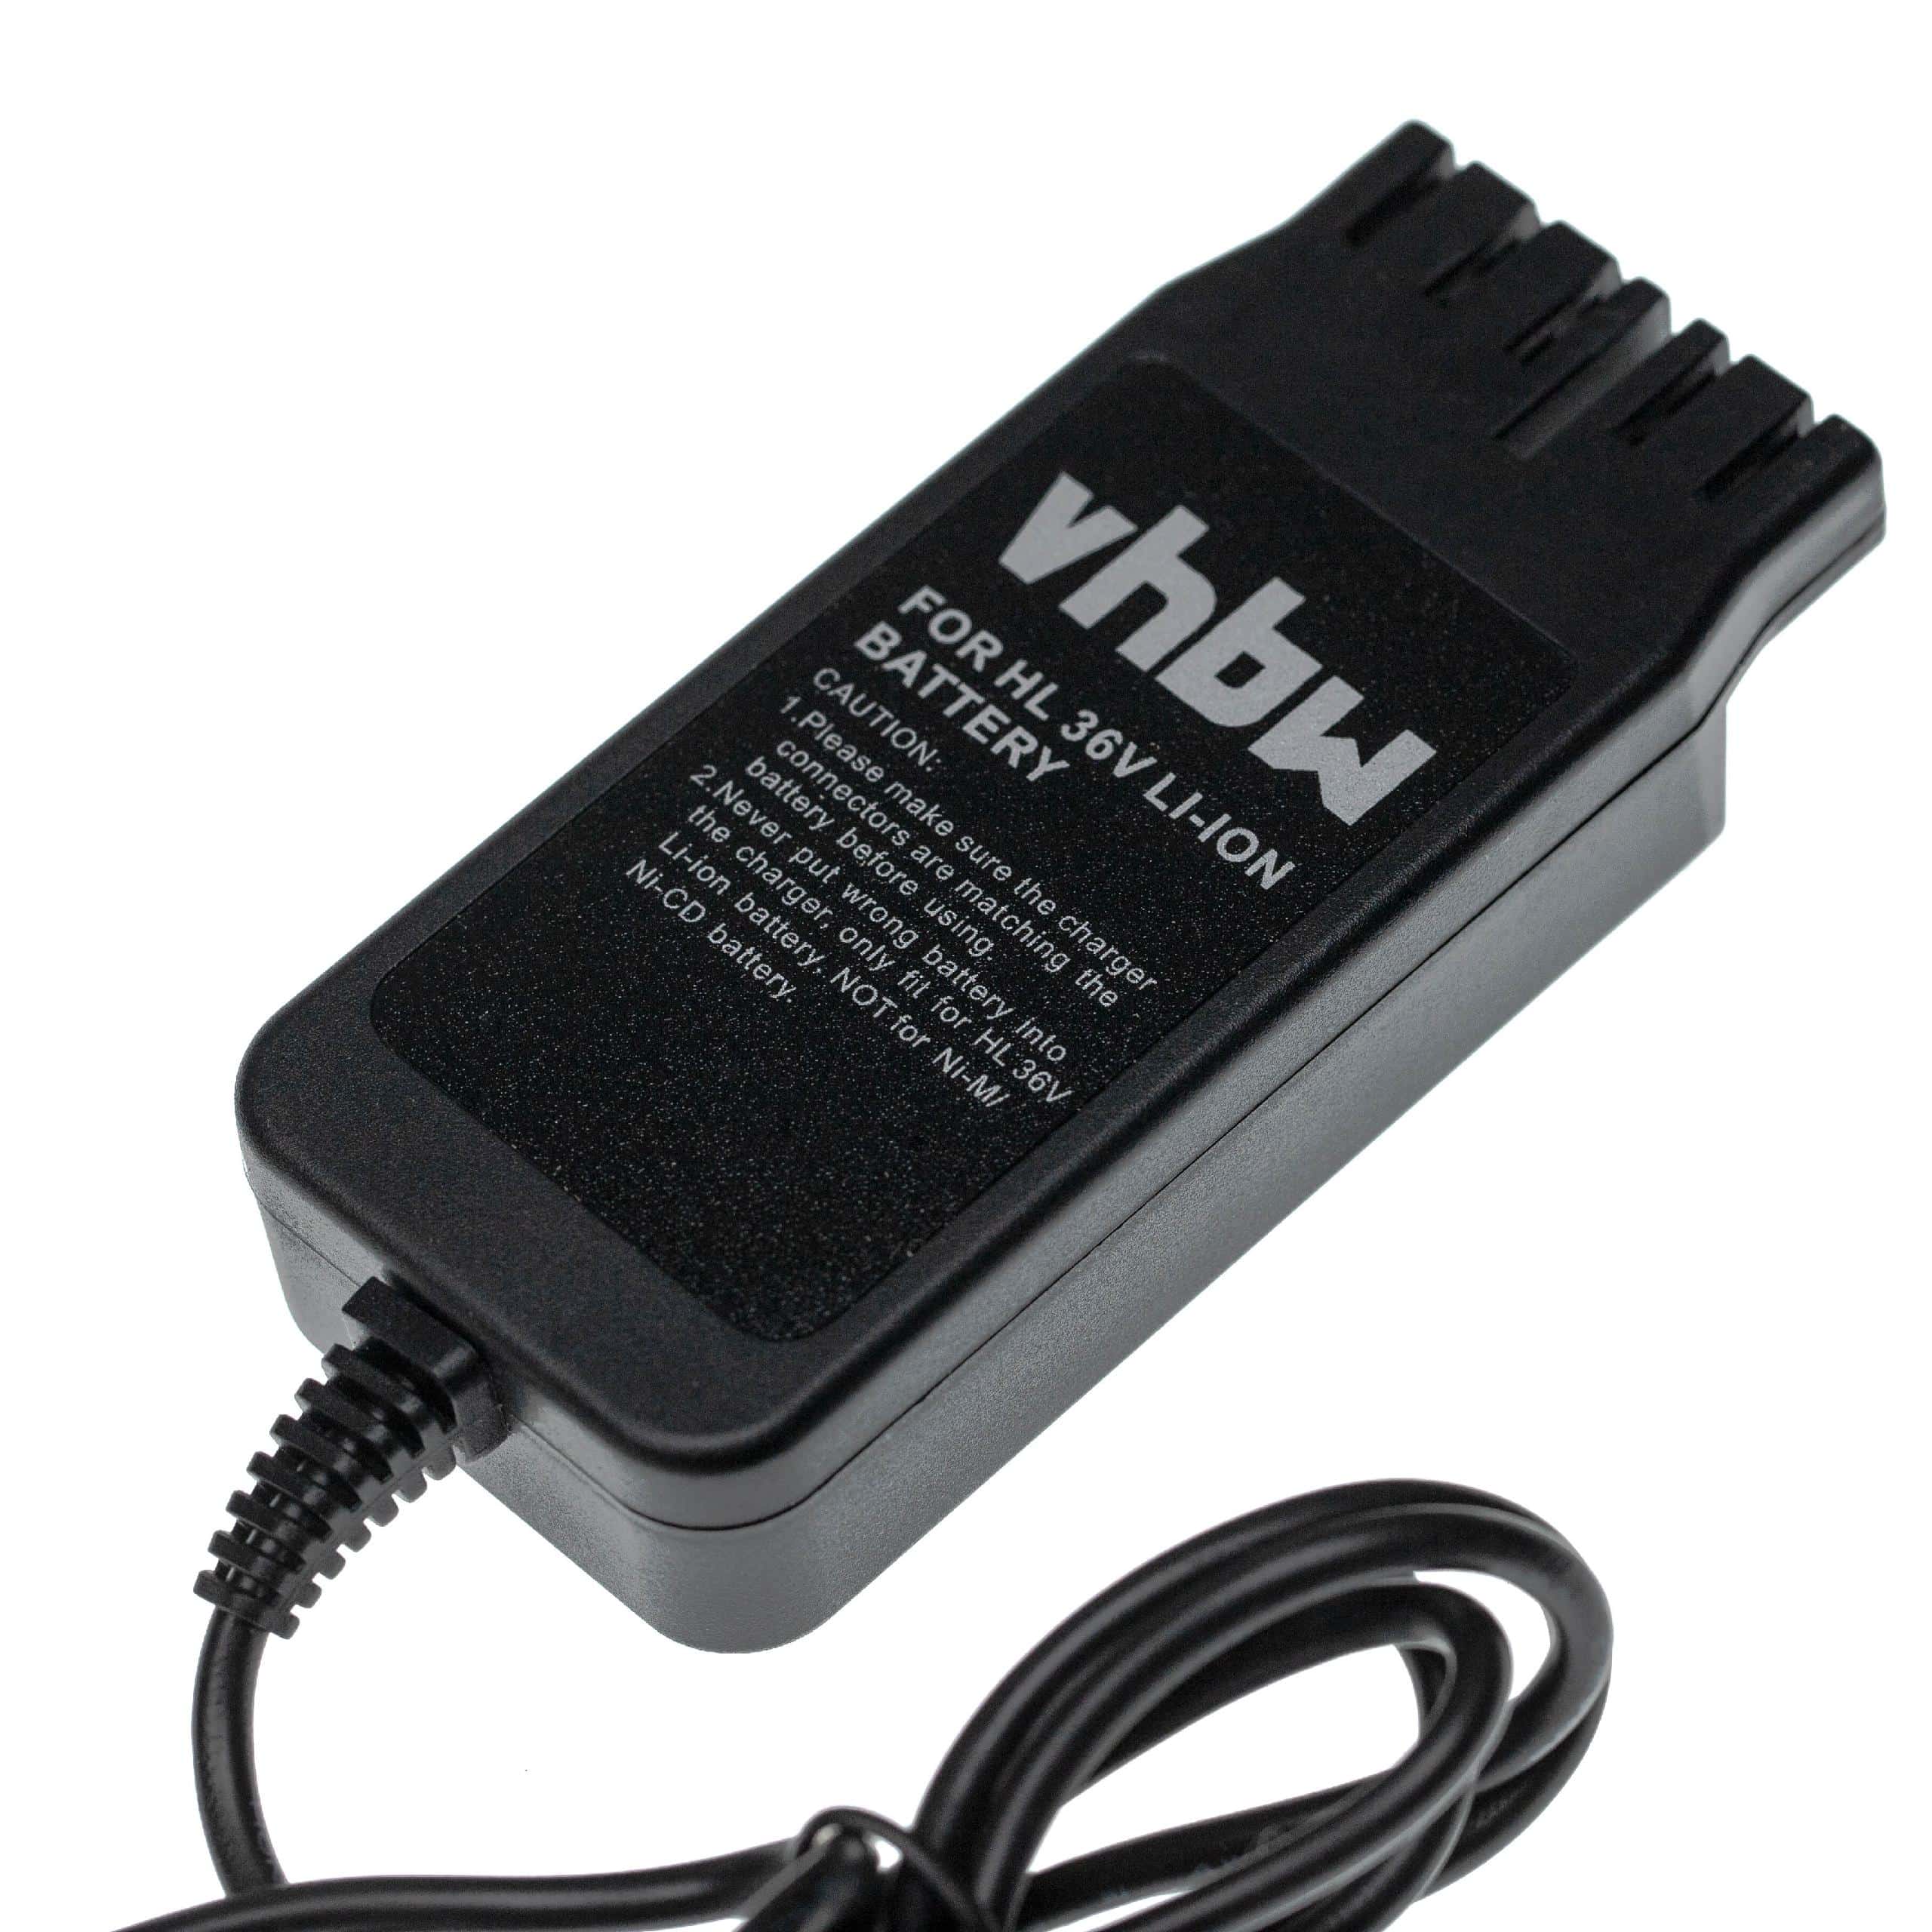 Cargador incl. fuente de alimentación para la batería de tus herramientas , Hilti B36 - 42 V / 0,7 A